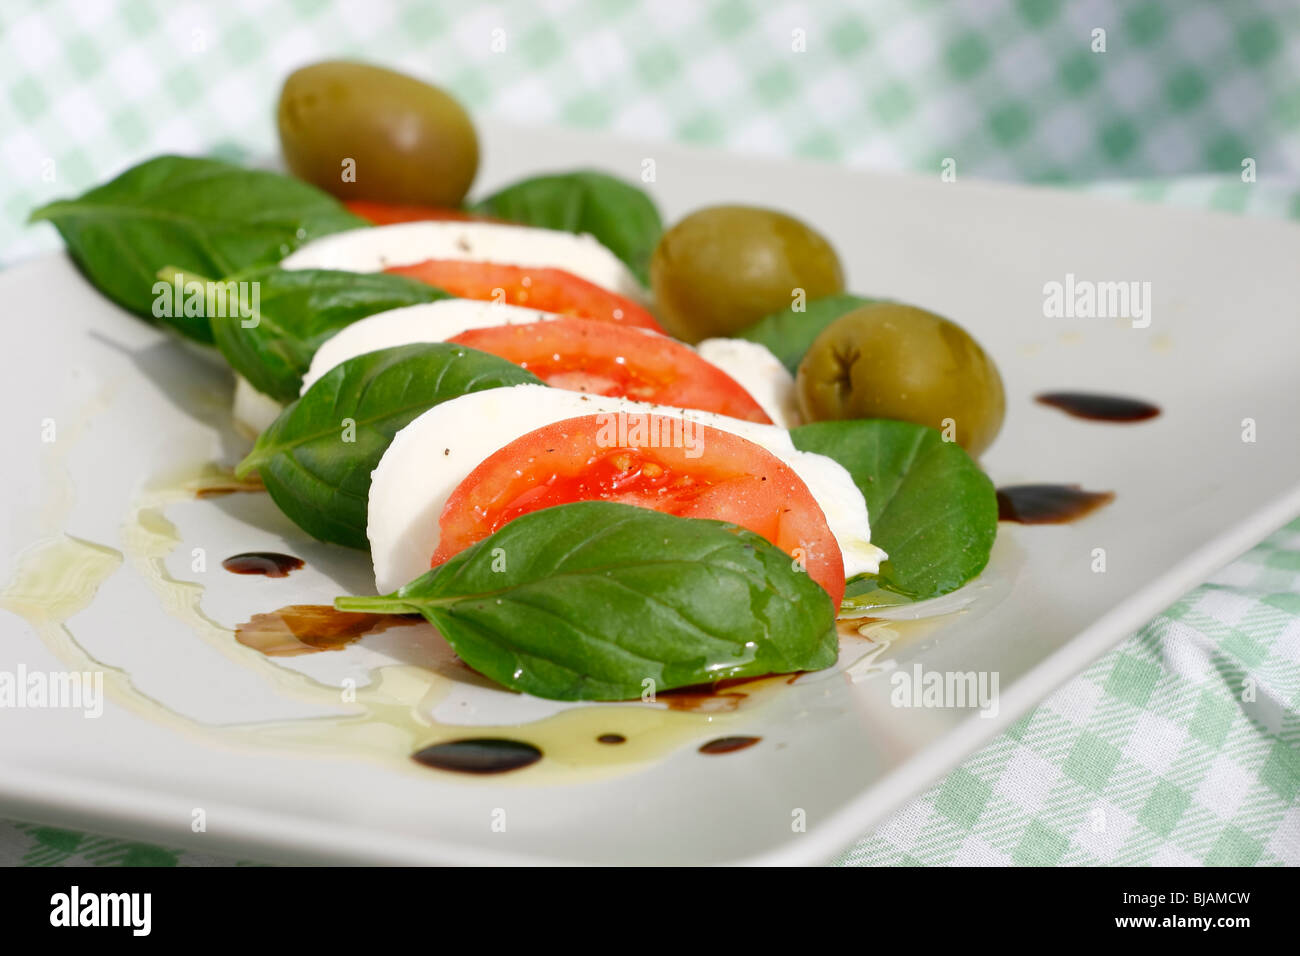 Salade caprese avec poivre, huile d'olive et d'aceto balsamico Banque D'Images